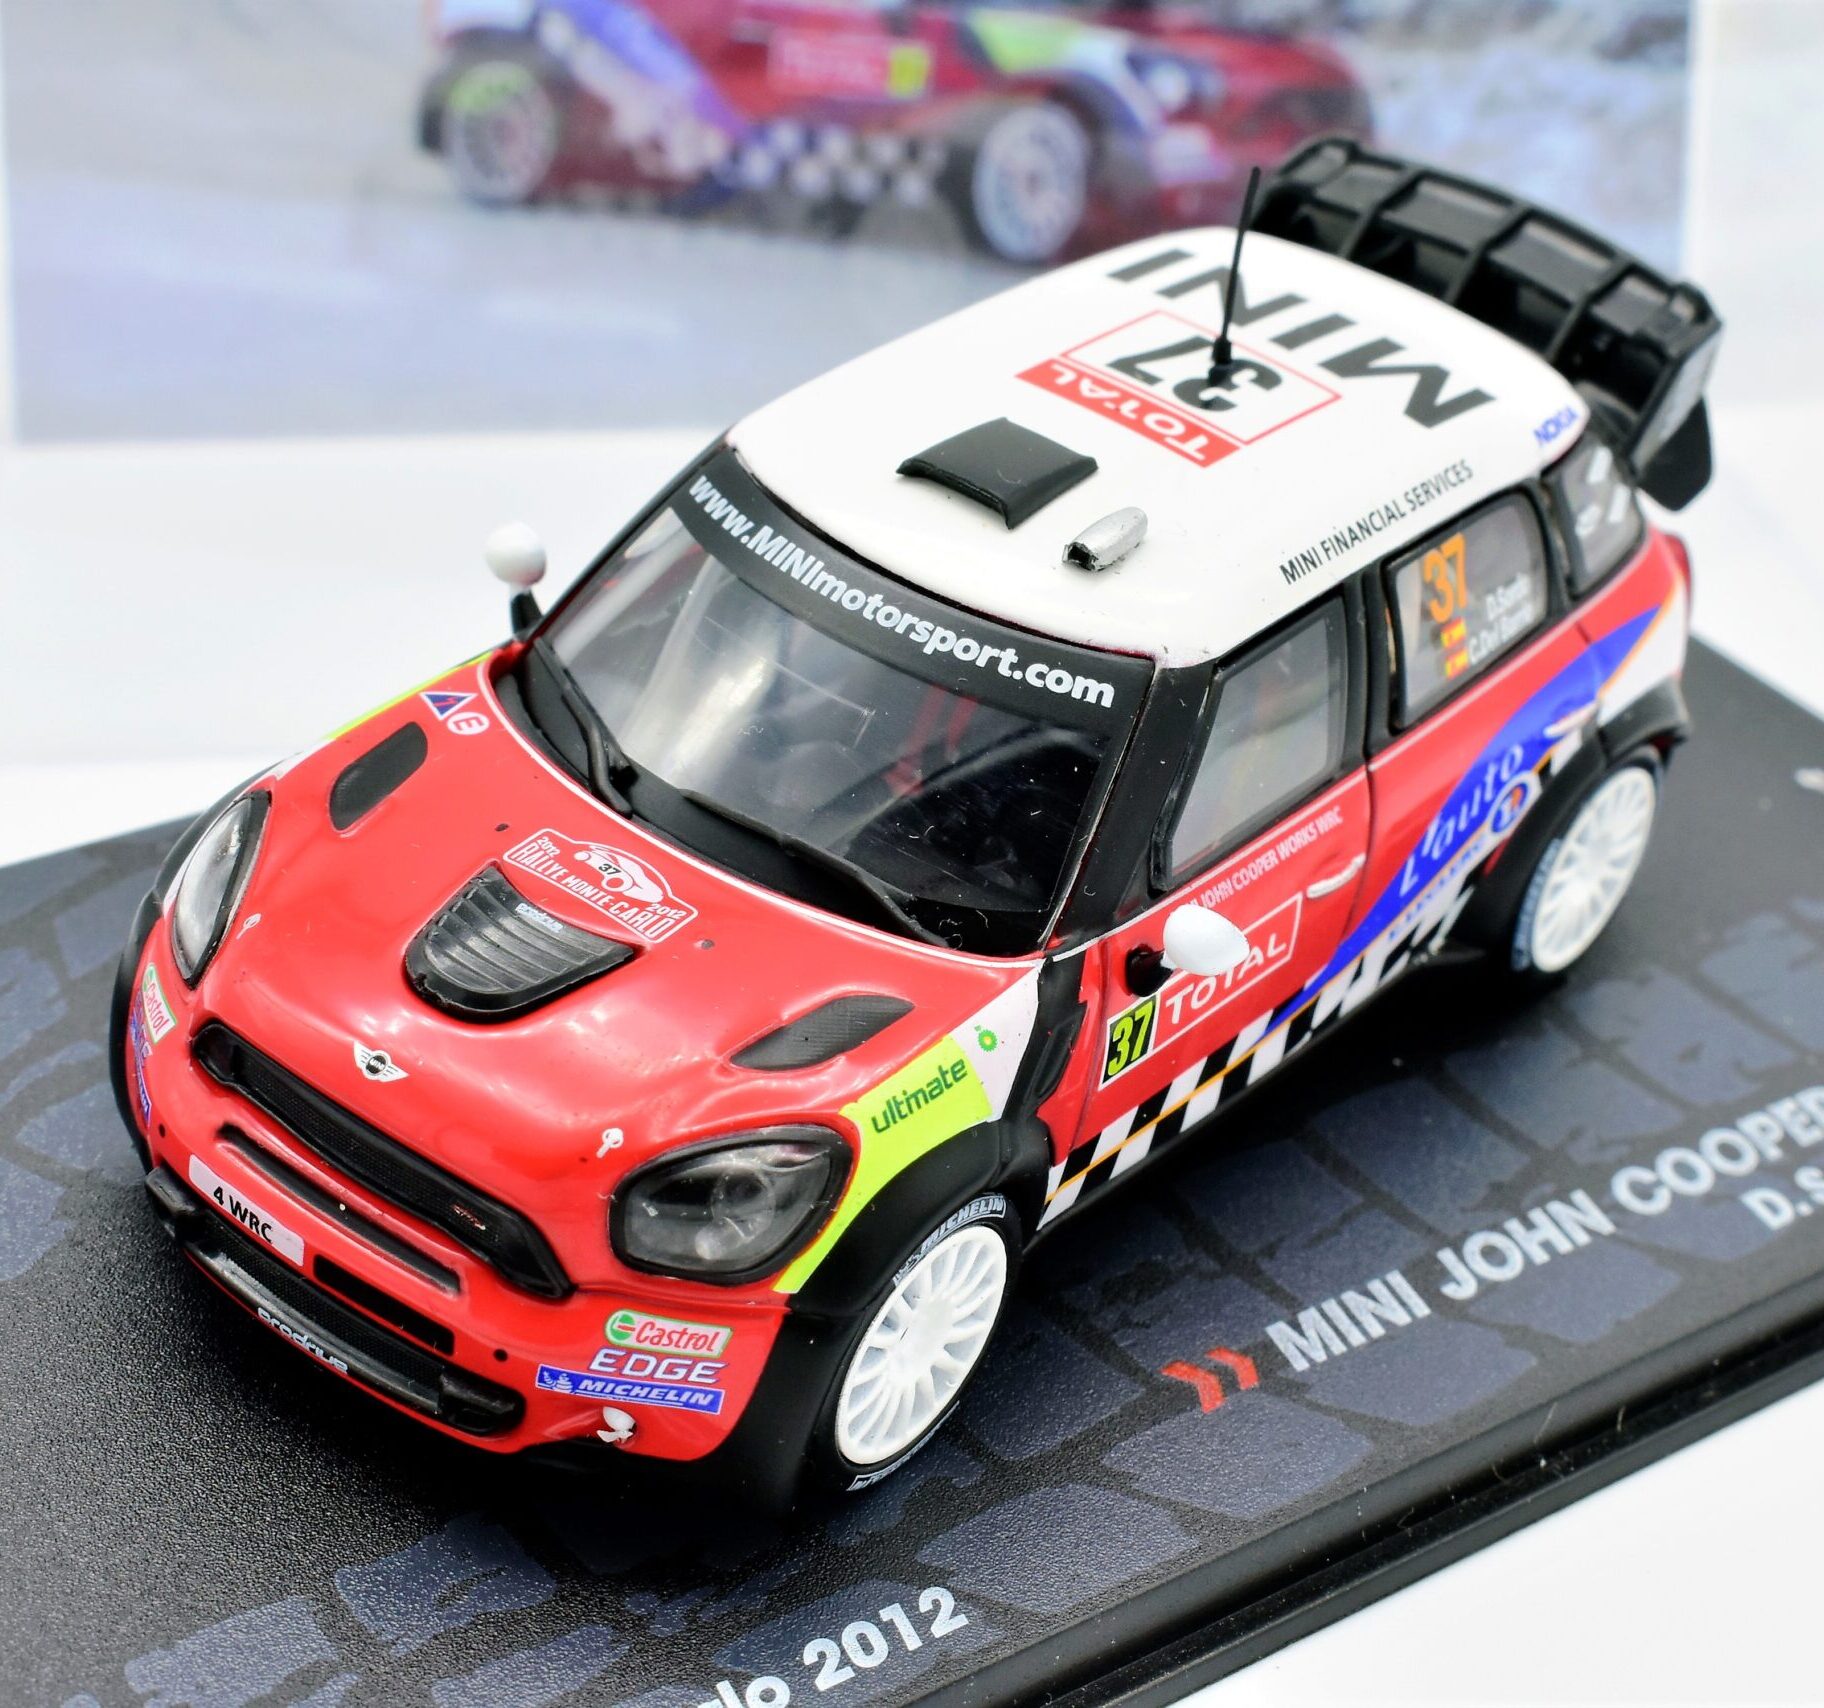 Rally Wrc model car 1:43 scale MINI JOHN COOPER WORKS 2012 ixo vehicles